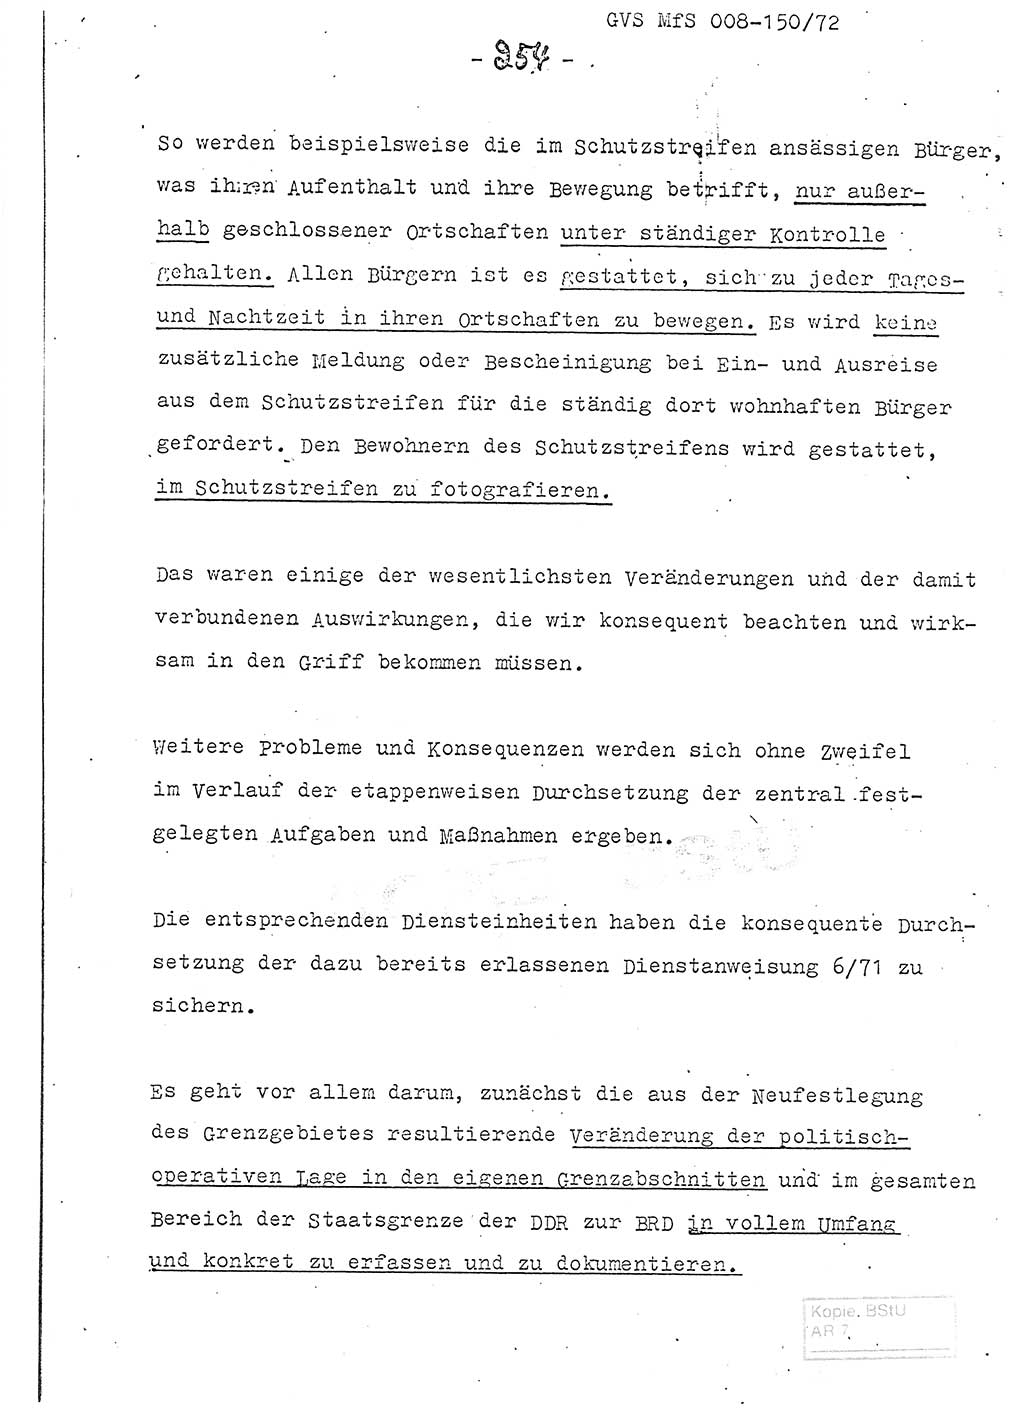 Referat (Entwurf) des Genossen Minister (Generaloberst Erich Mielke) auf der Dienstkonferenz 1972, Ministerium für Staatssicherheit (MfS) [Deutsche Demokratische Republik (DDR)], Der Minister, Geheime Verschlußsache (GVS) 008-150/72, Berlin 25.2.1972, Seite 254 (Ref. Entw. DK MfS DDR Min. GVS 008-150/72 1972, S. 254)